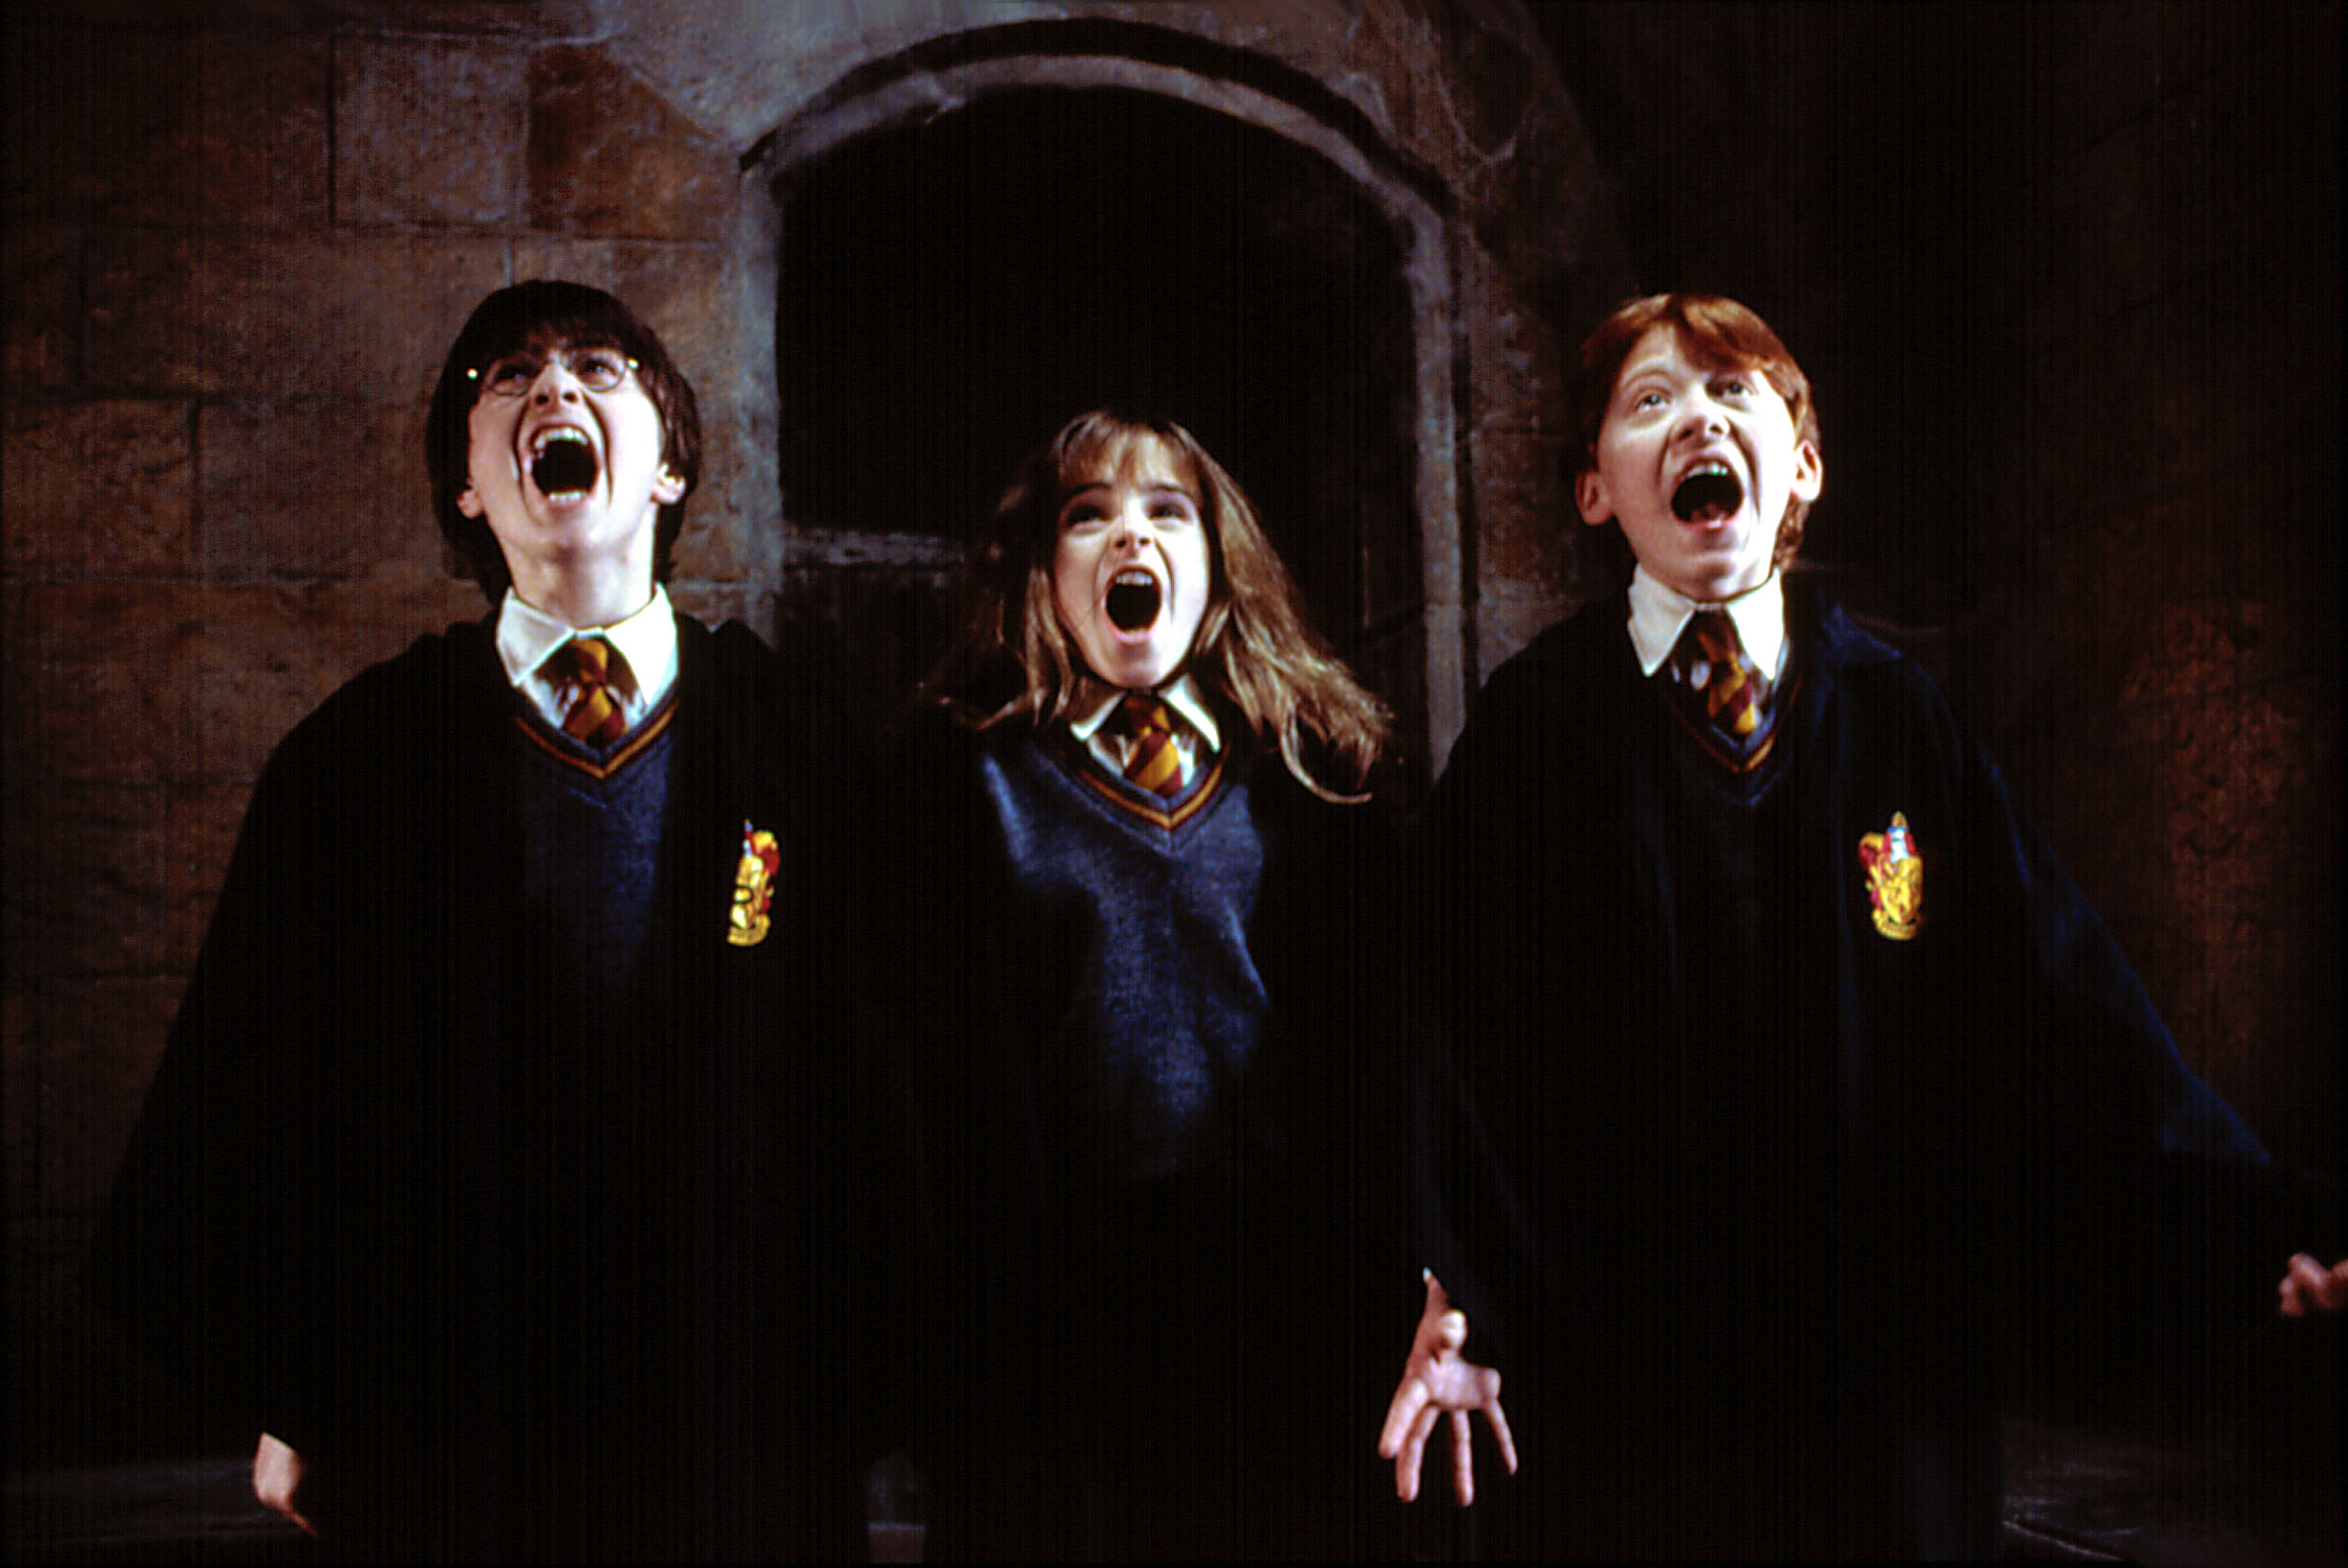 Daniel Radcliffe, Emma Watson, and Rupert Grint all scream